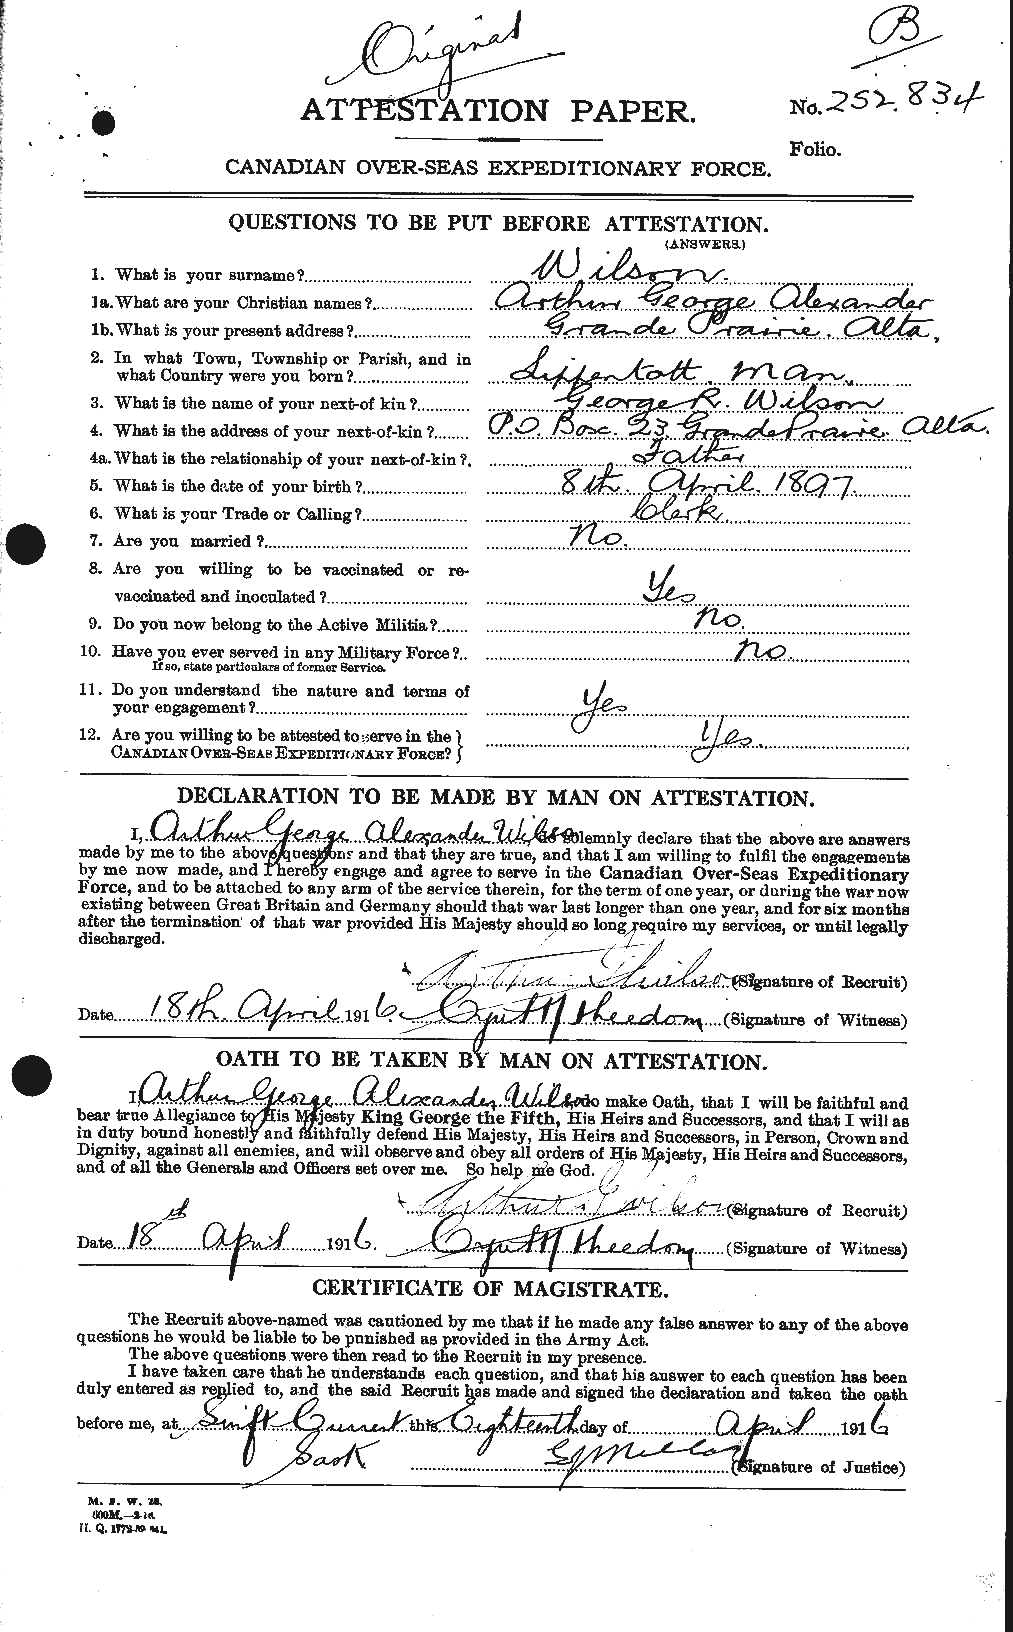 Dossiers du Personnel de la Première Guerre mondiale - CEC 677763a